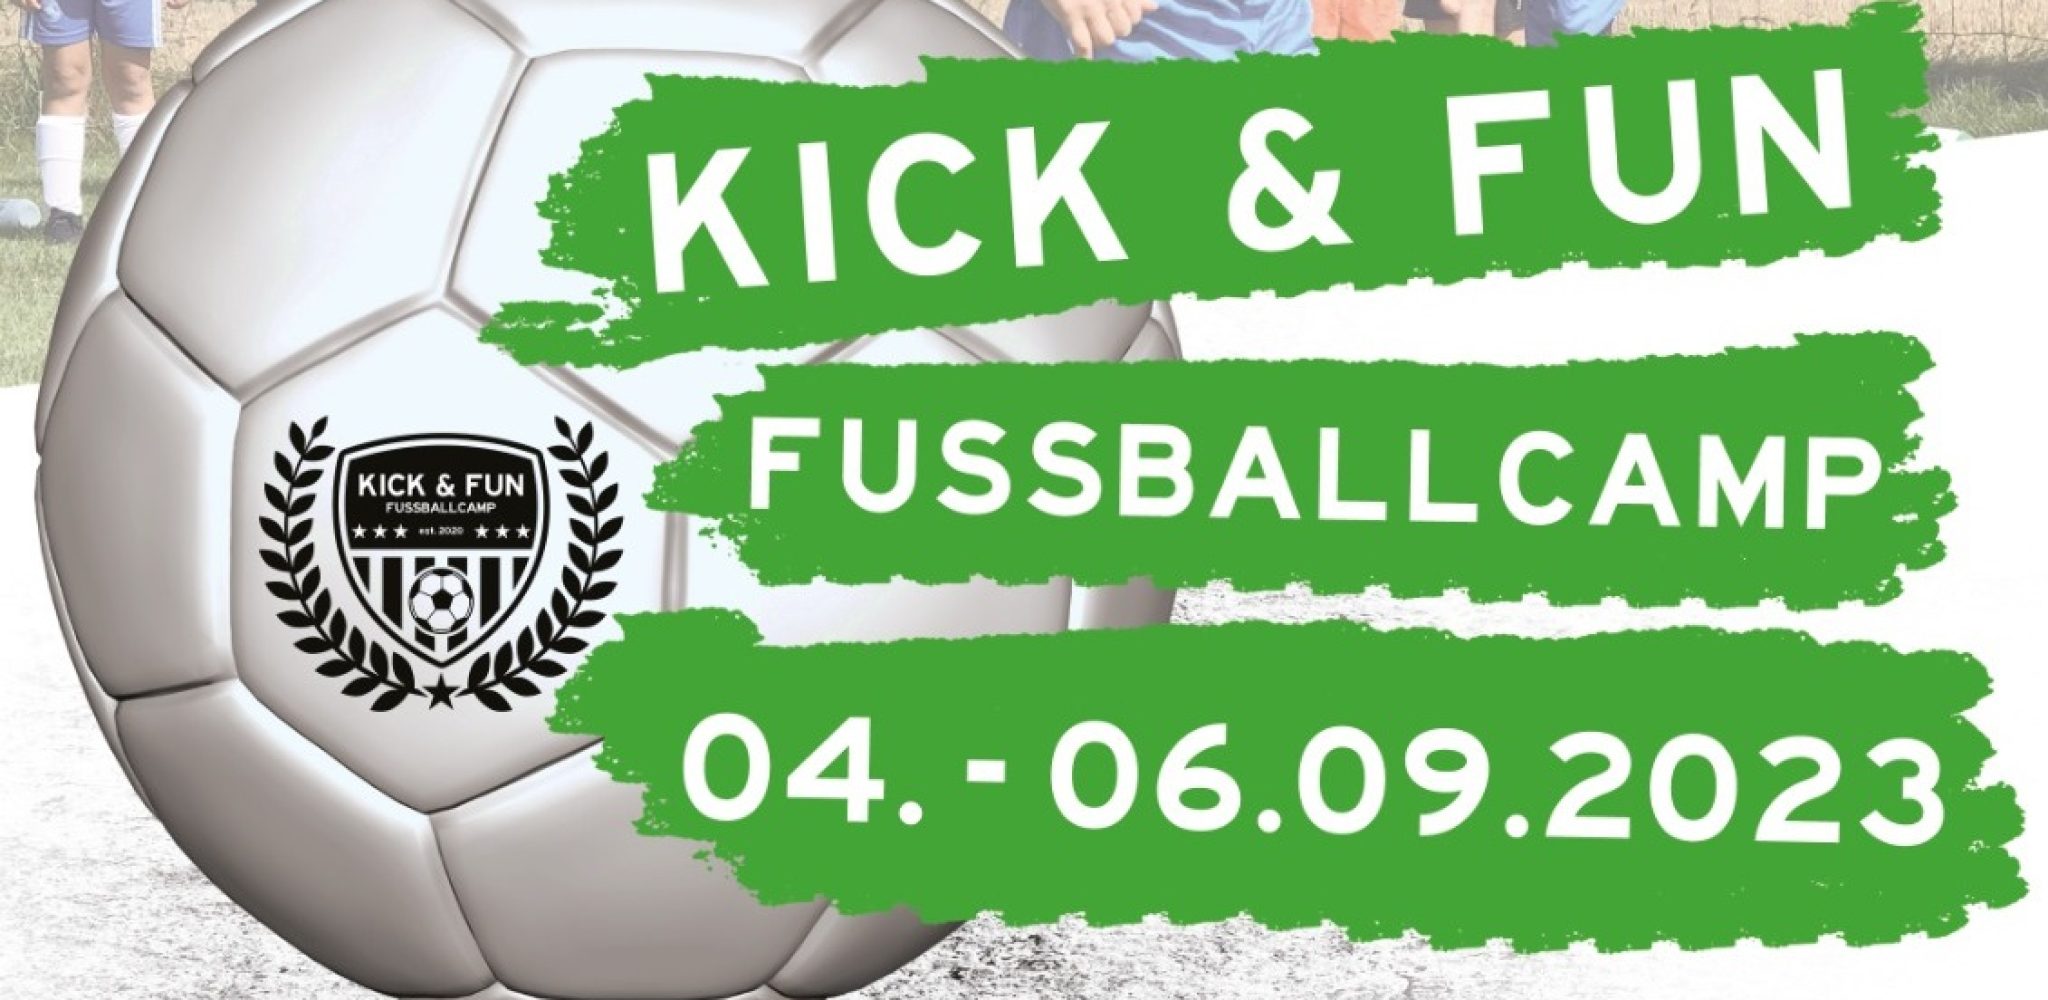 Kick & Fun